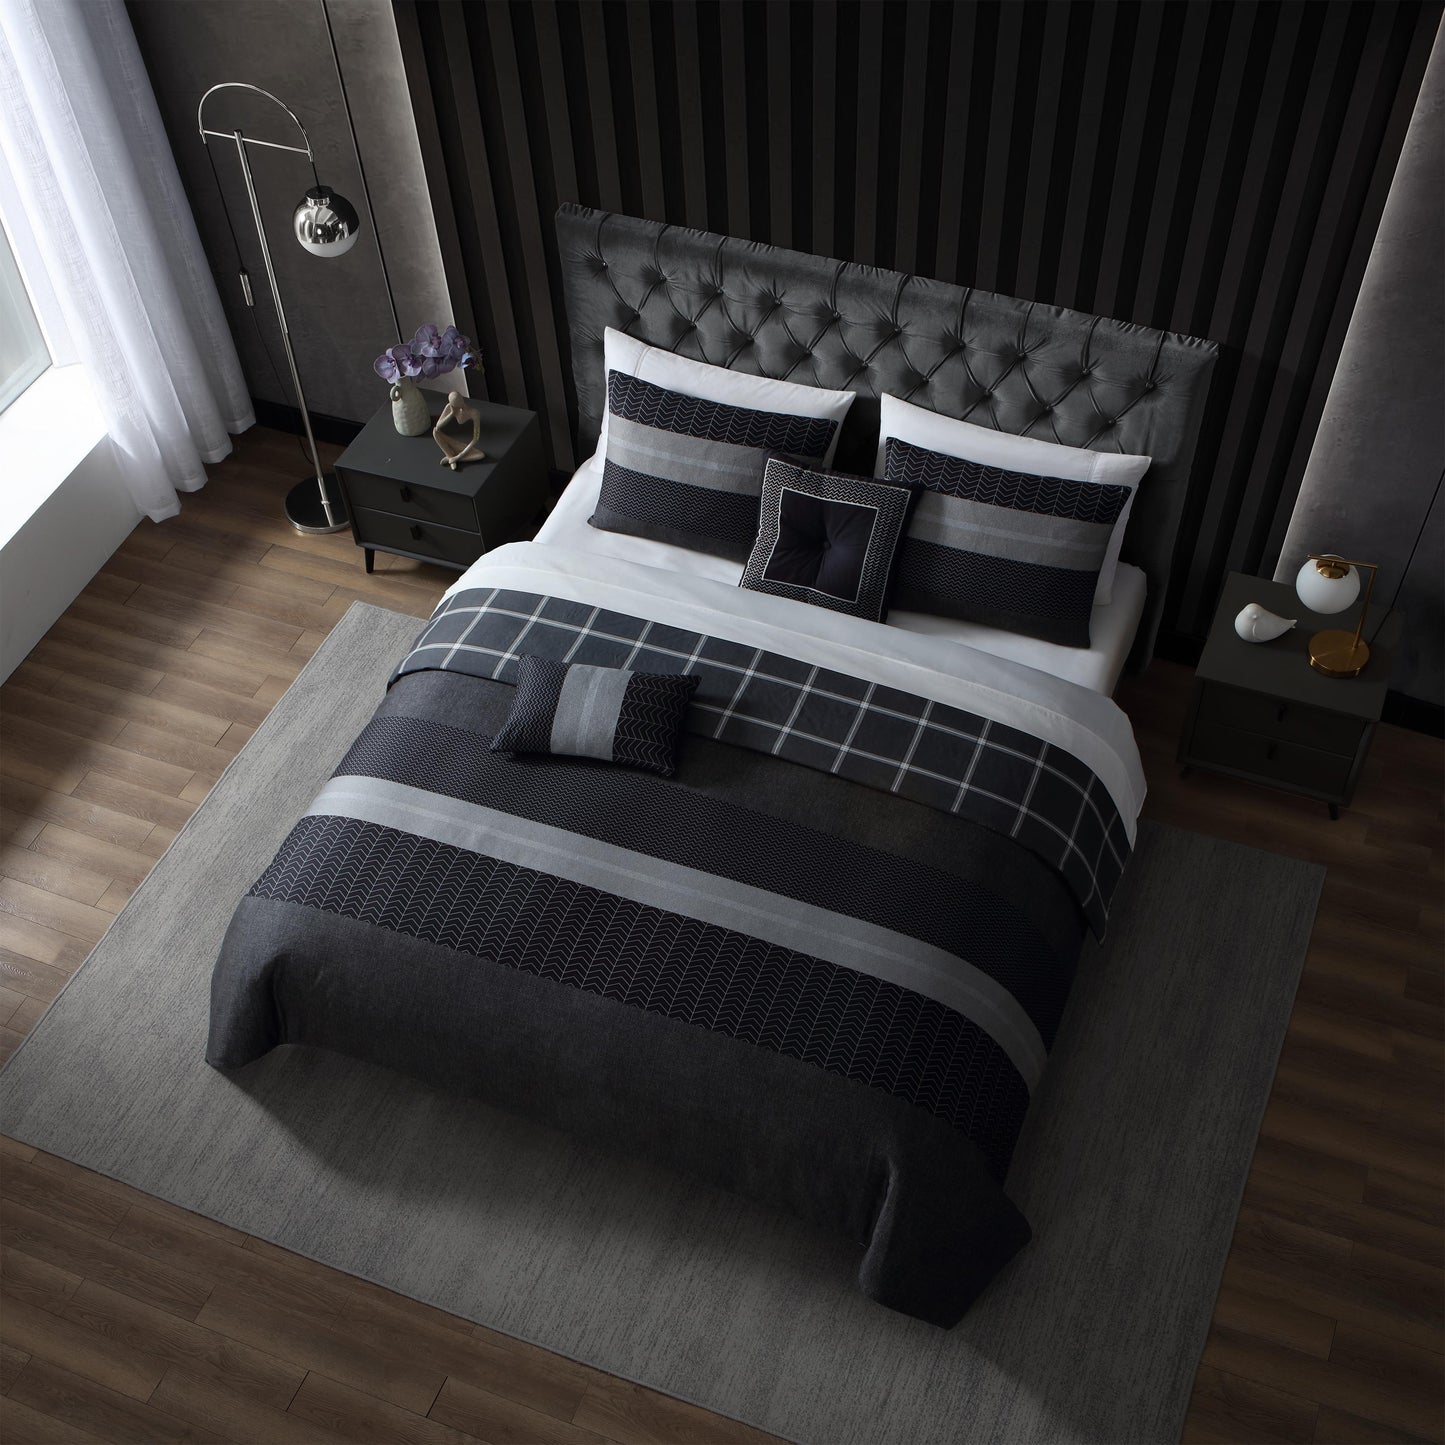 Bebejan Kyle Black 100% Cotton 5-Piece Reversible Comforter Set Comforter Sets By Bebejan®